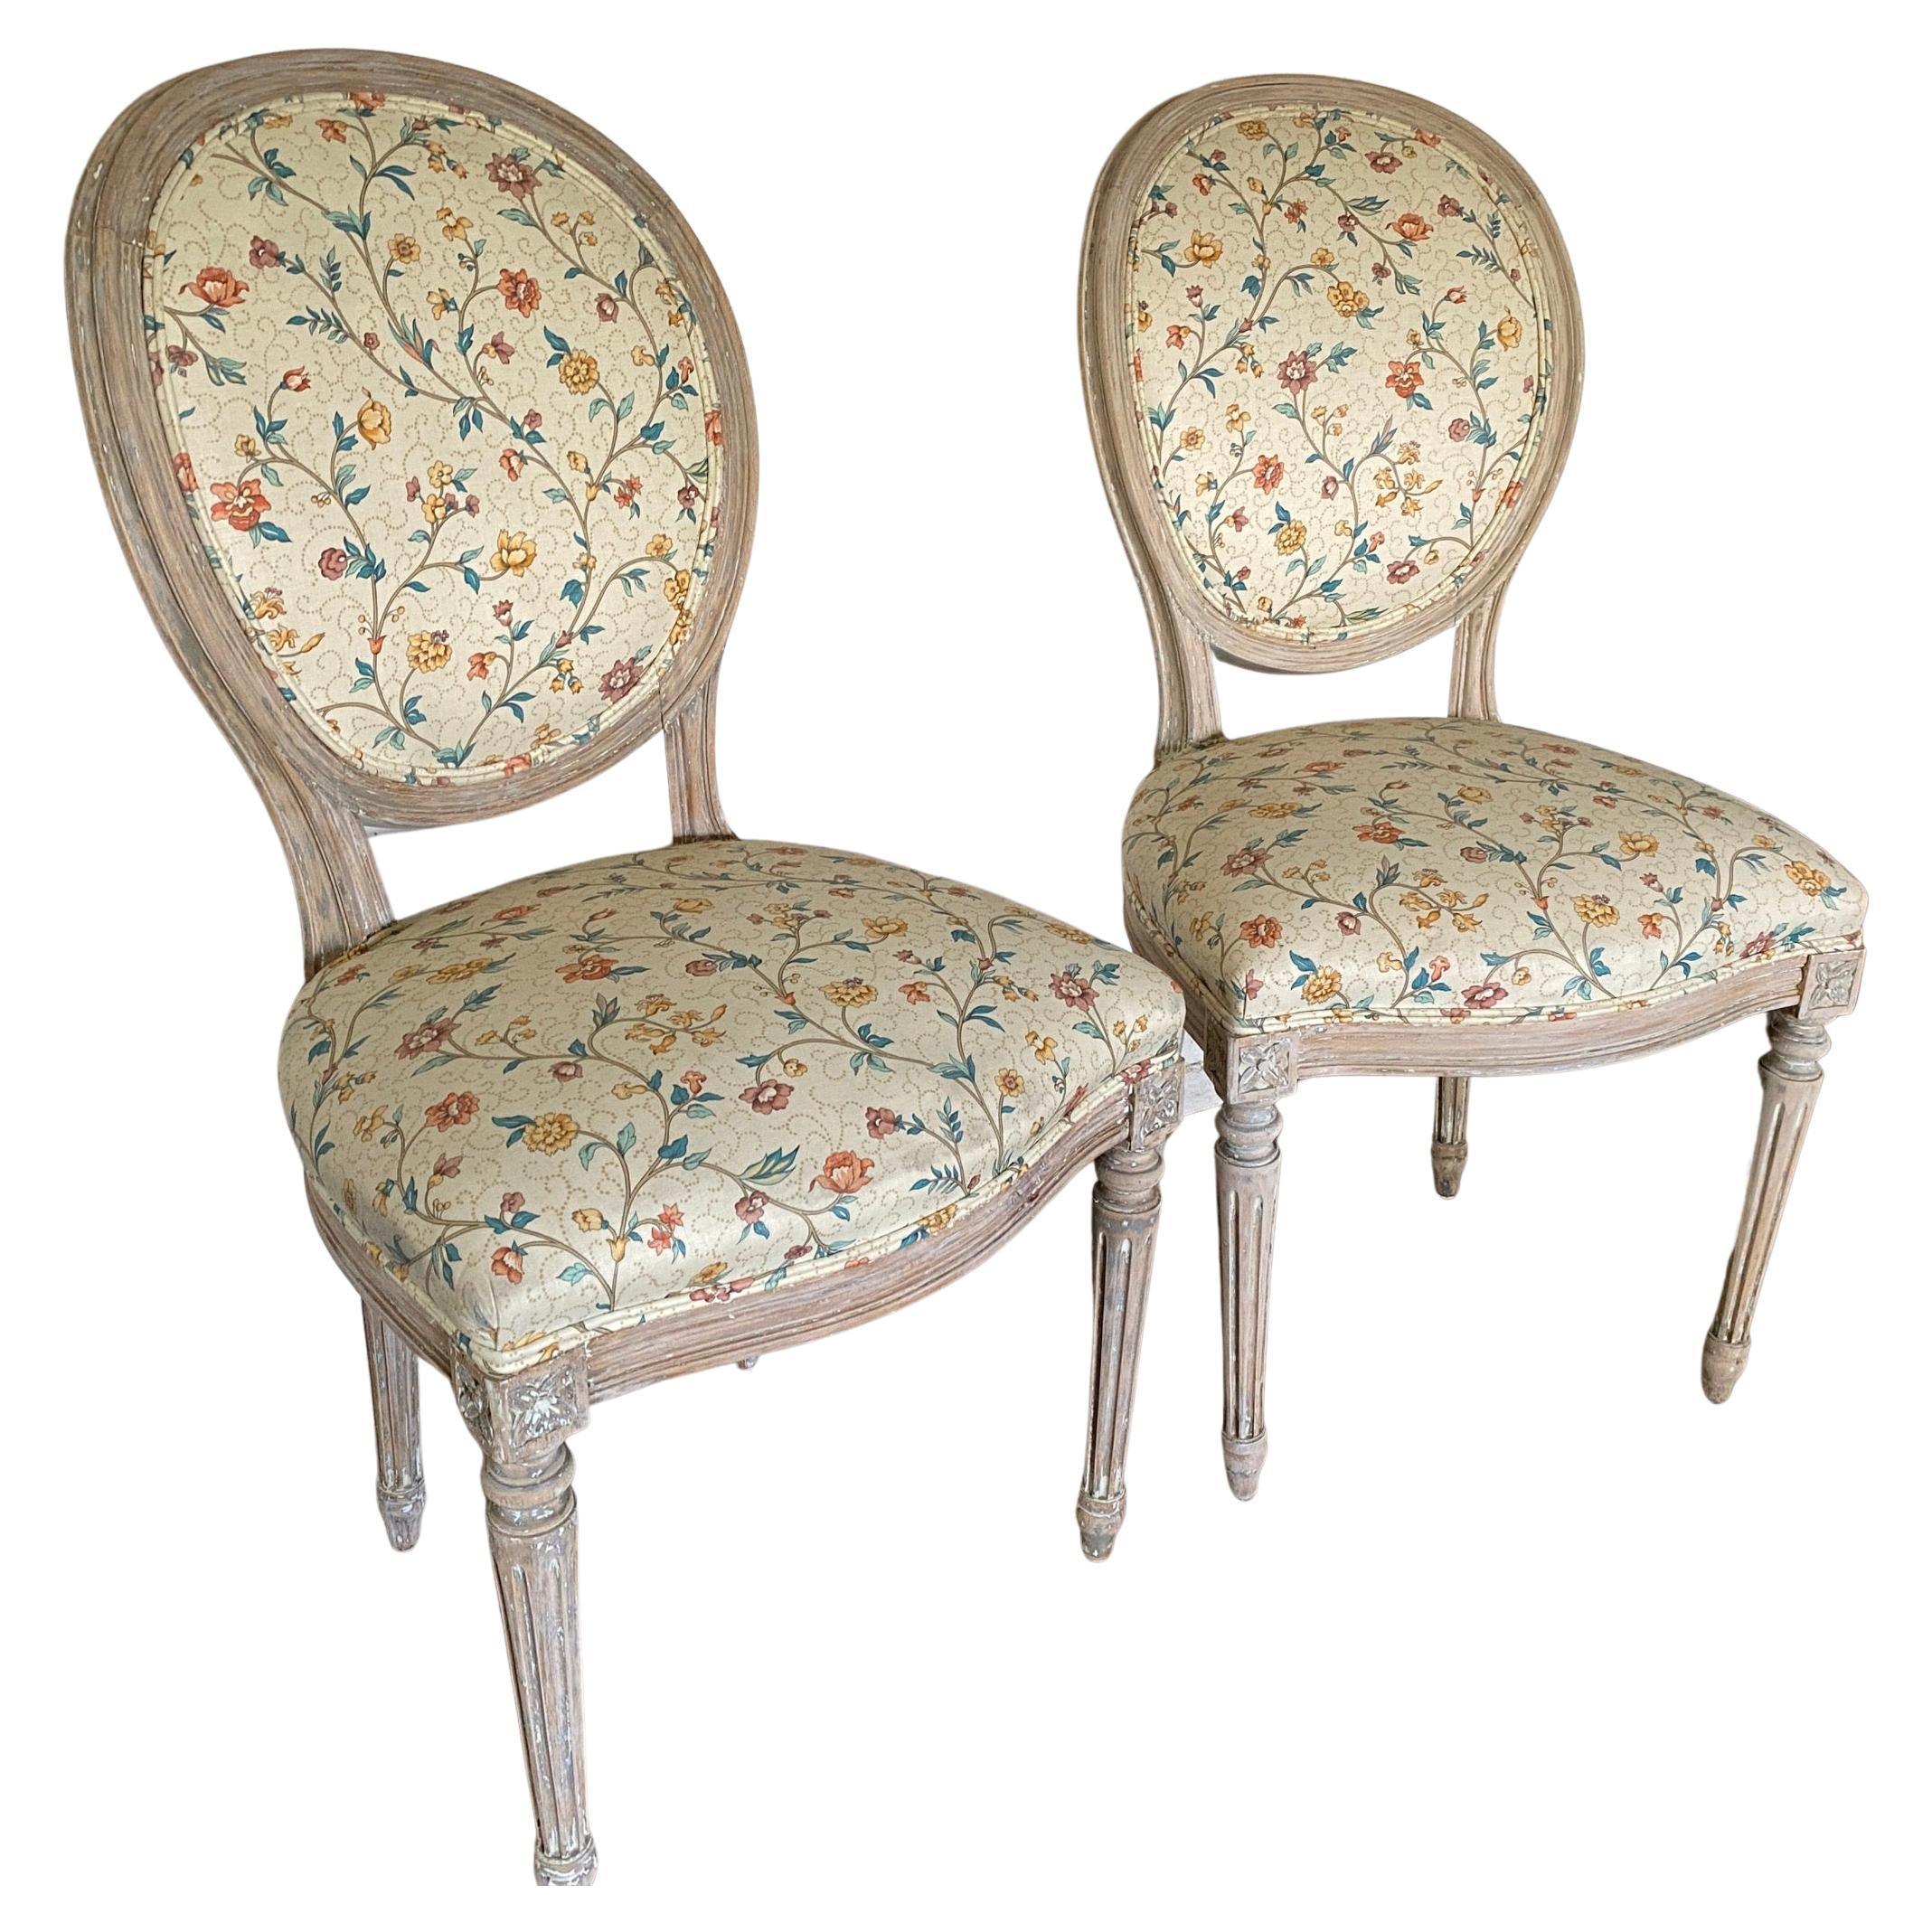 Zwei französische, patinierte und bemalte Beistellstühle im Louis-XVI-Stil mit ovaler Rückenlehne und kannelierten Beinen. Die Notstandsfarbe verleiht den Stühlen zusätzlichen Charakter und Stil. Verwenden Sie es zum Essen oder im Schlafzimmer, in